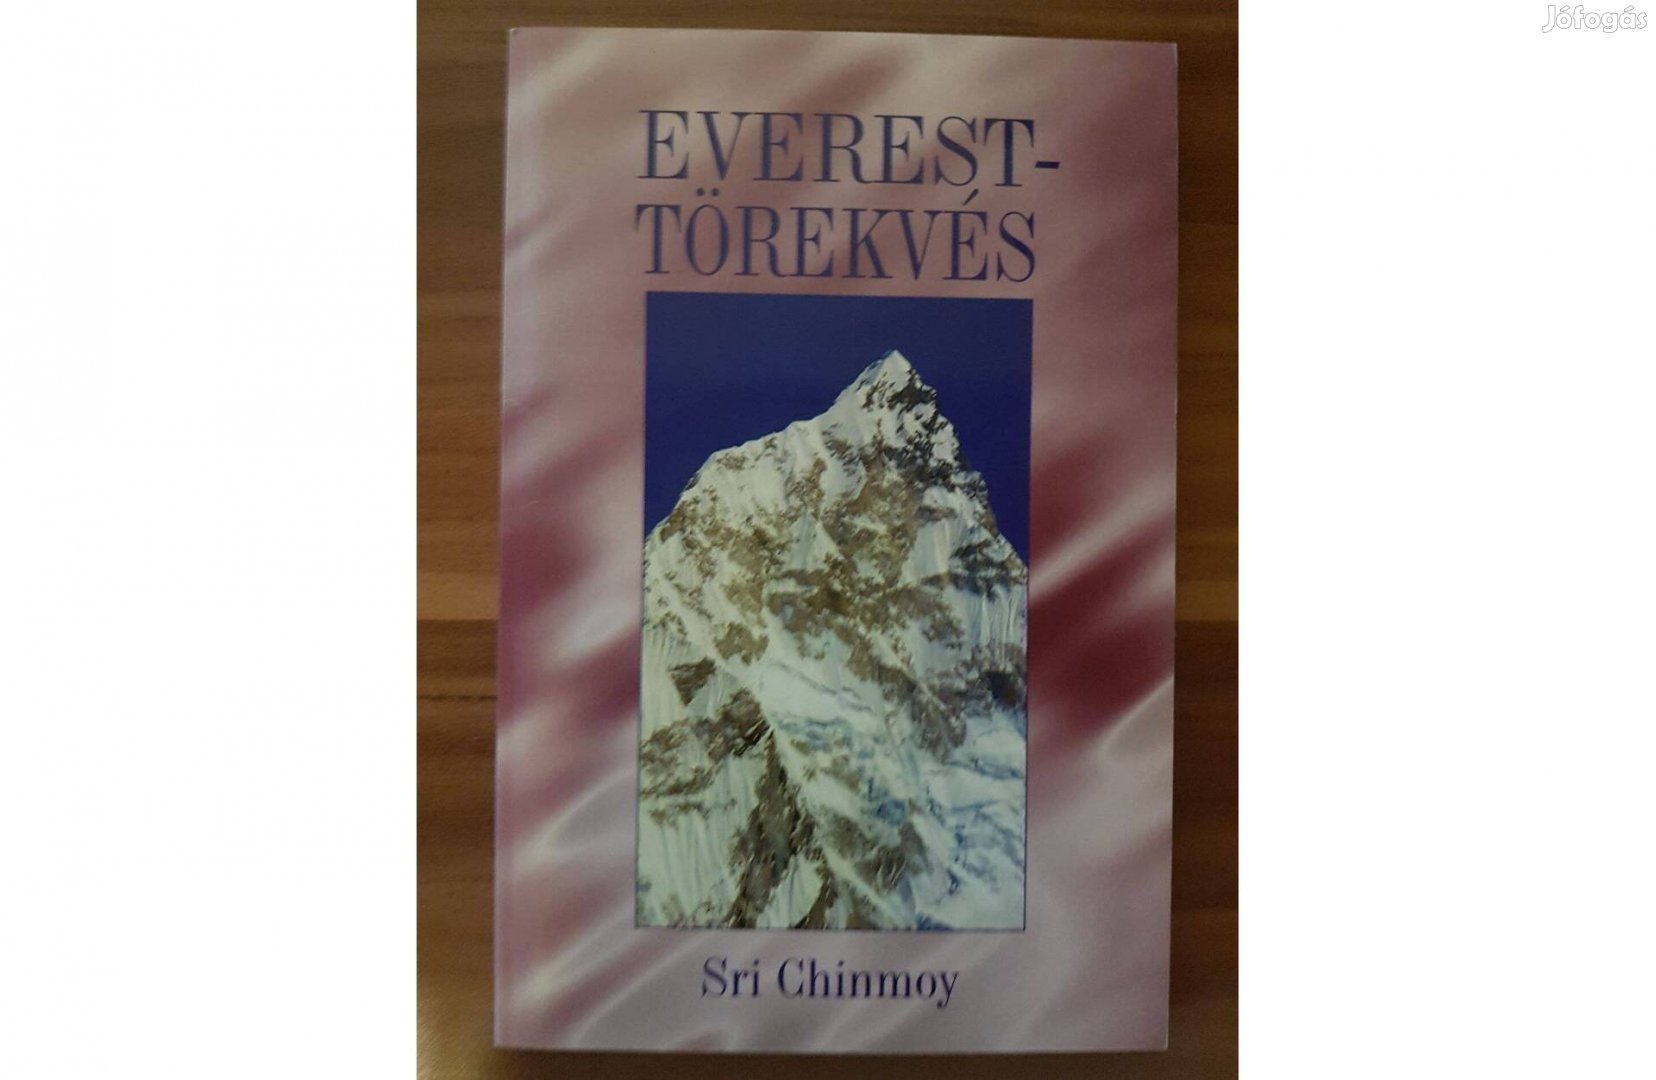 Sri Chinmoy - Everest Törekvés